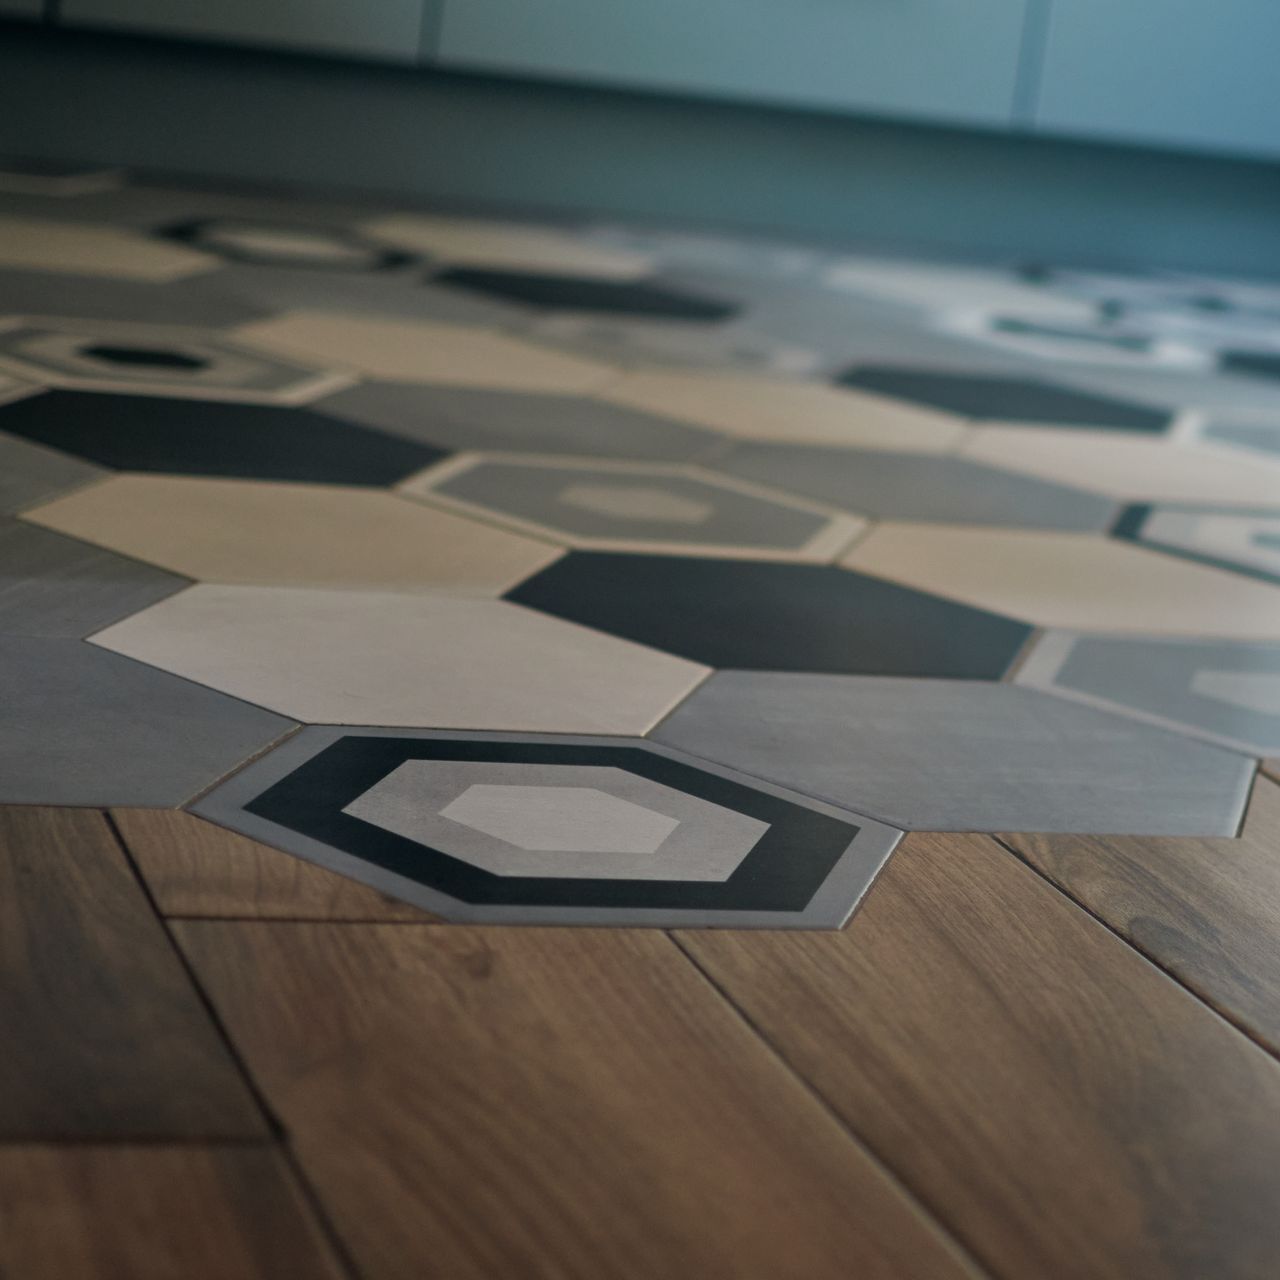 a wooden floor with hexagonal tiles on it